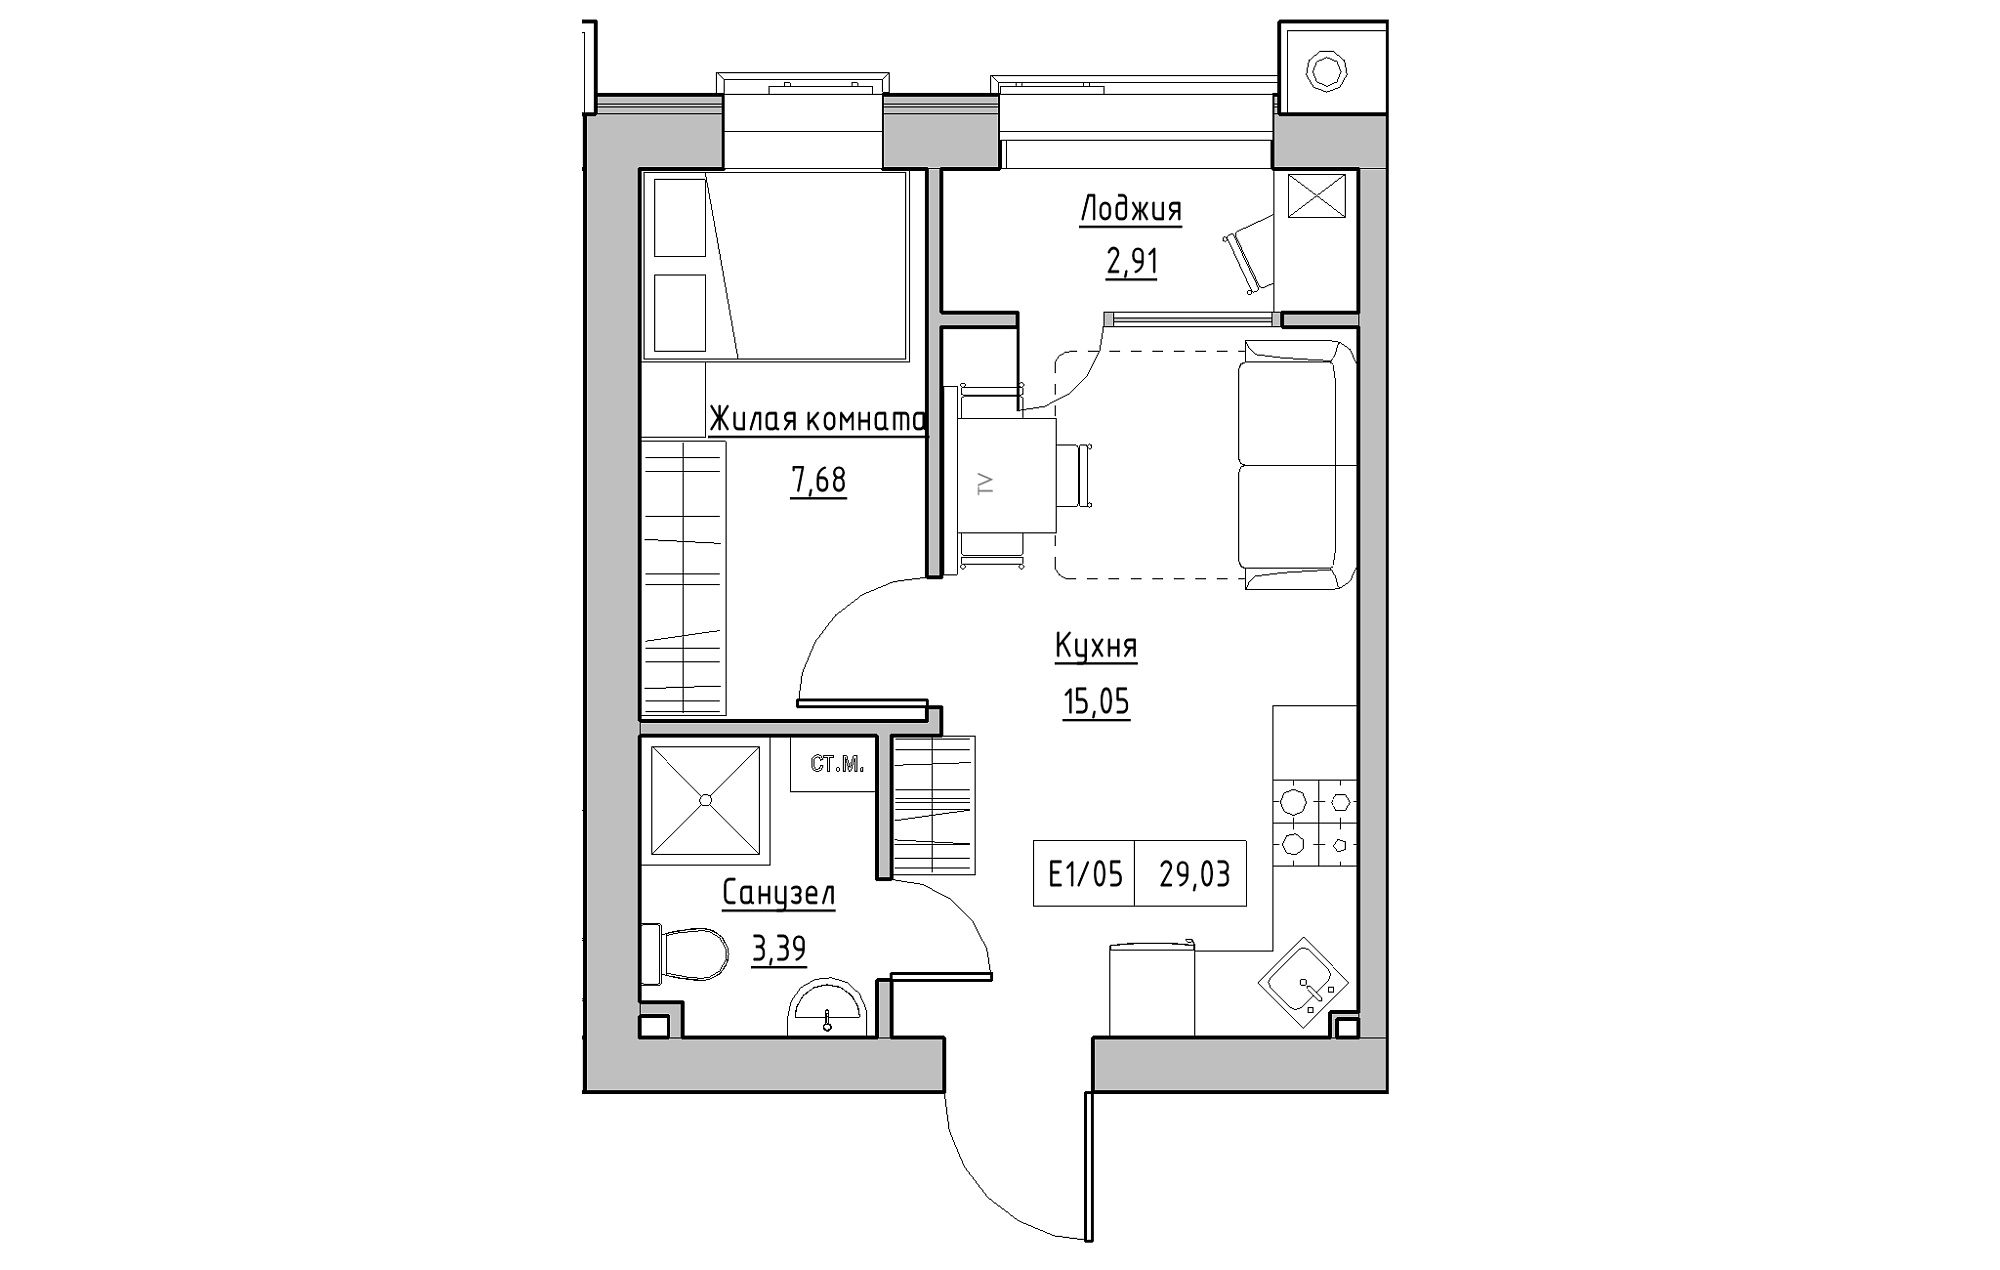 Планировка 1-к квартира площей 29.03м2, KS-013-02/0007.